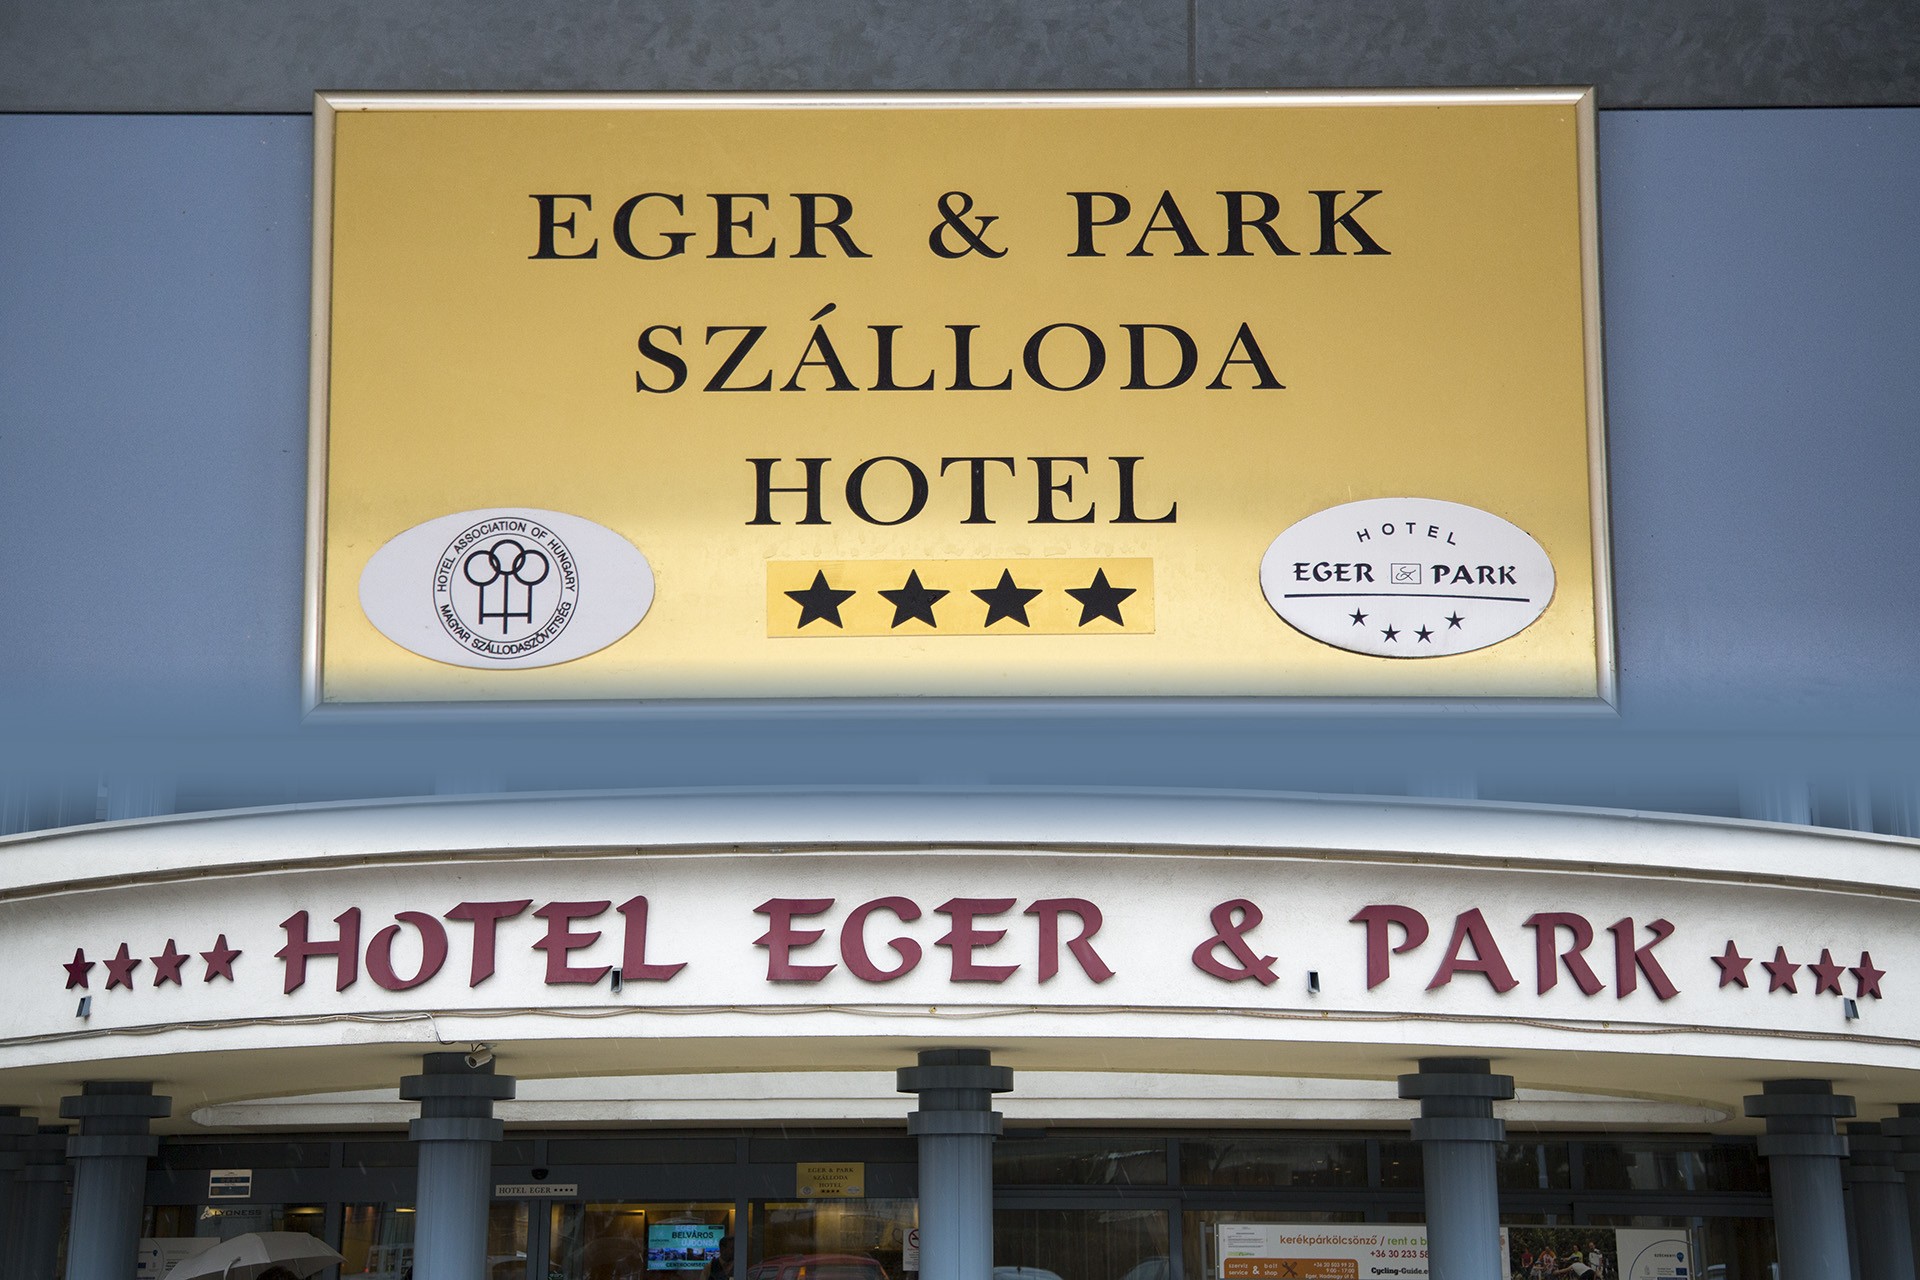 Eger & Park Szálloda Hotel